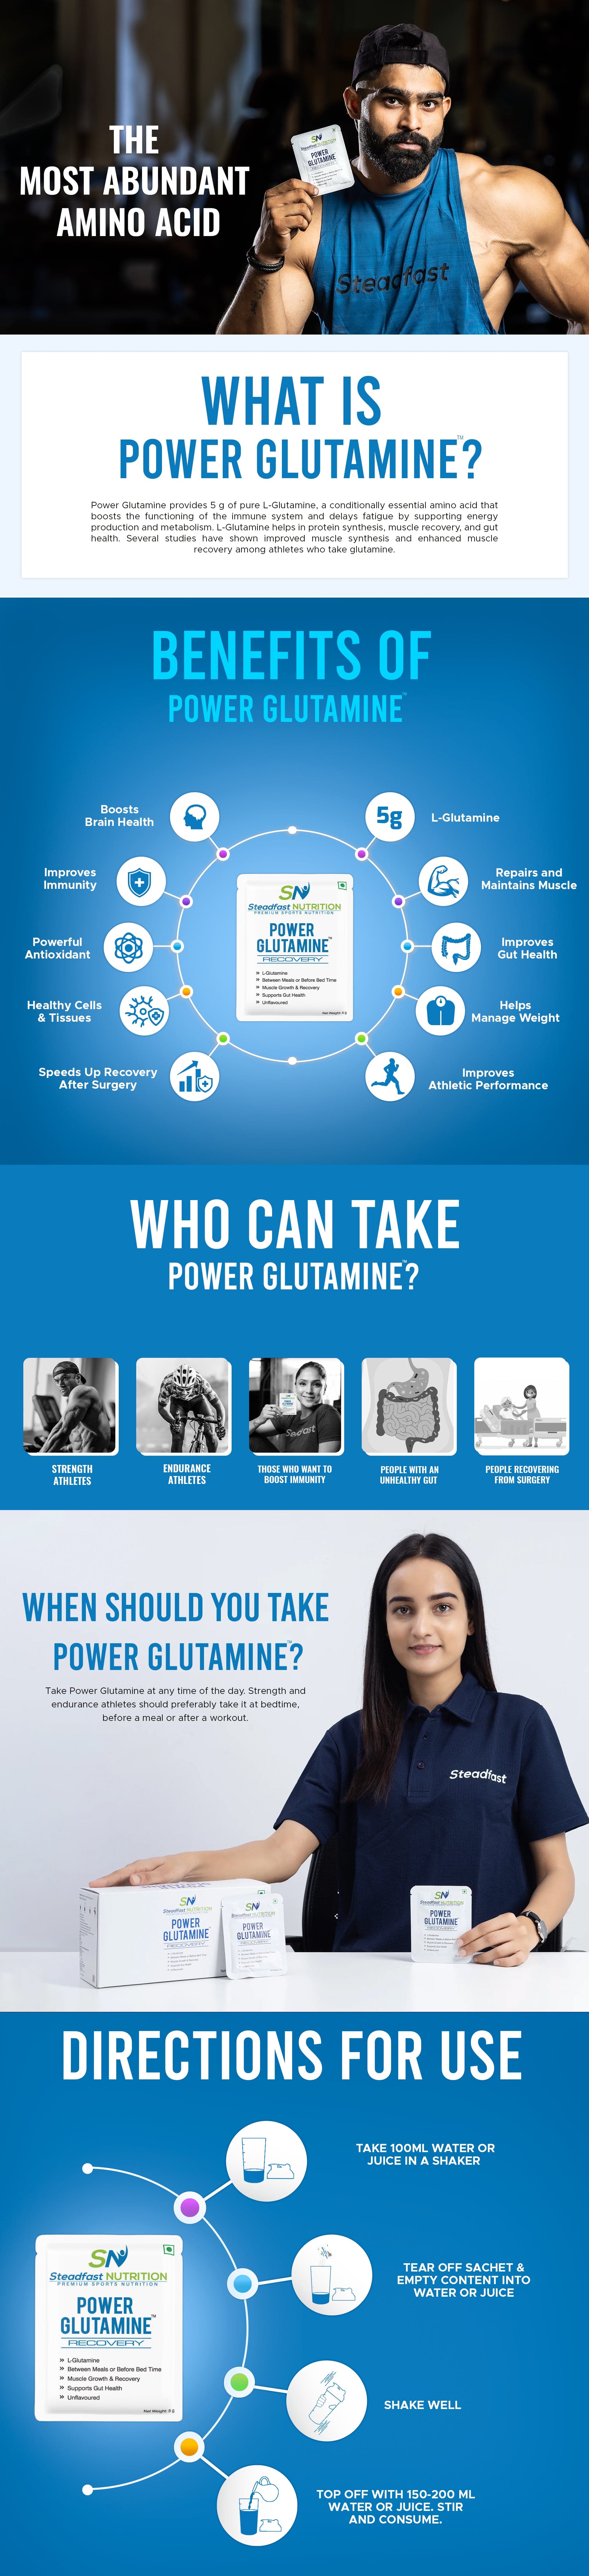 Power Glutamine